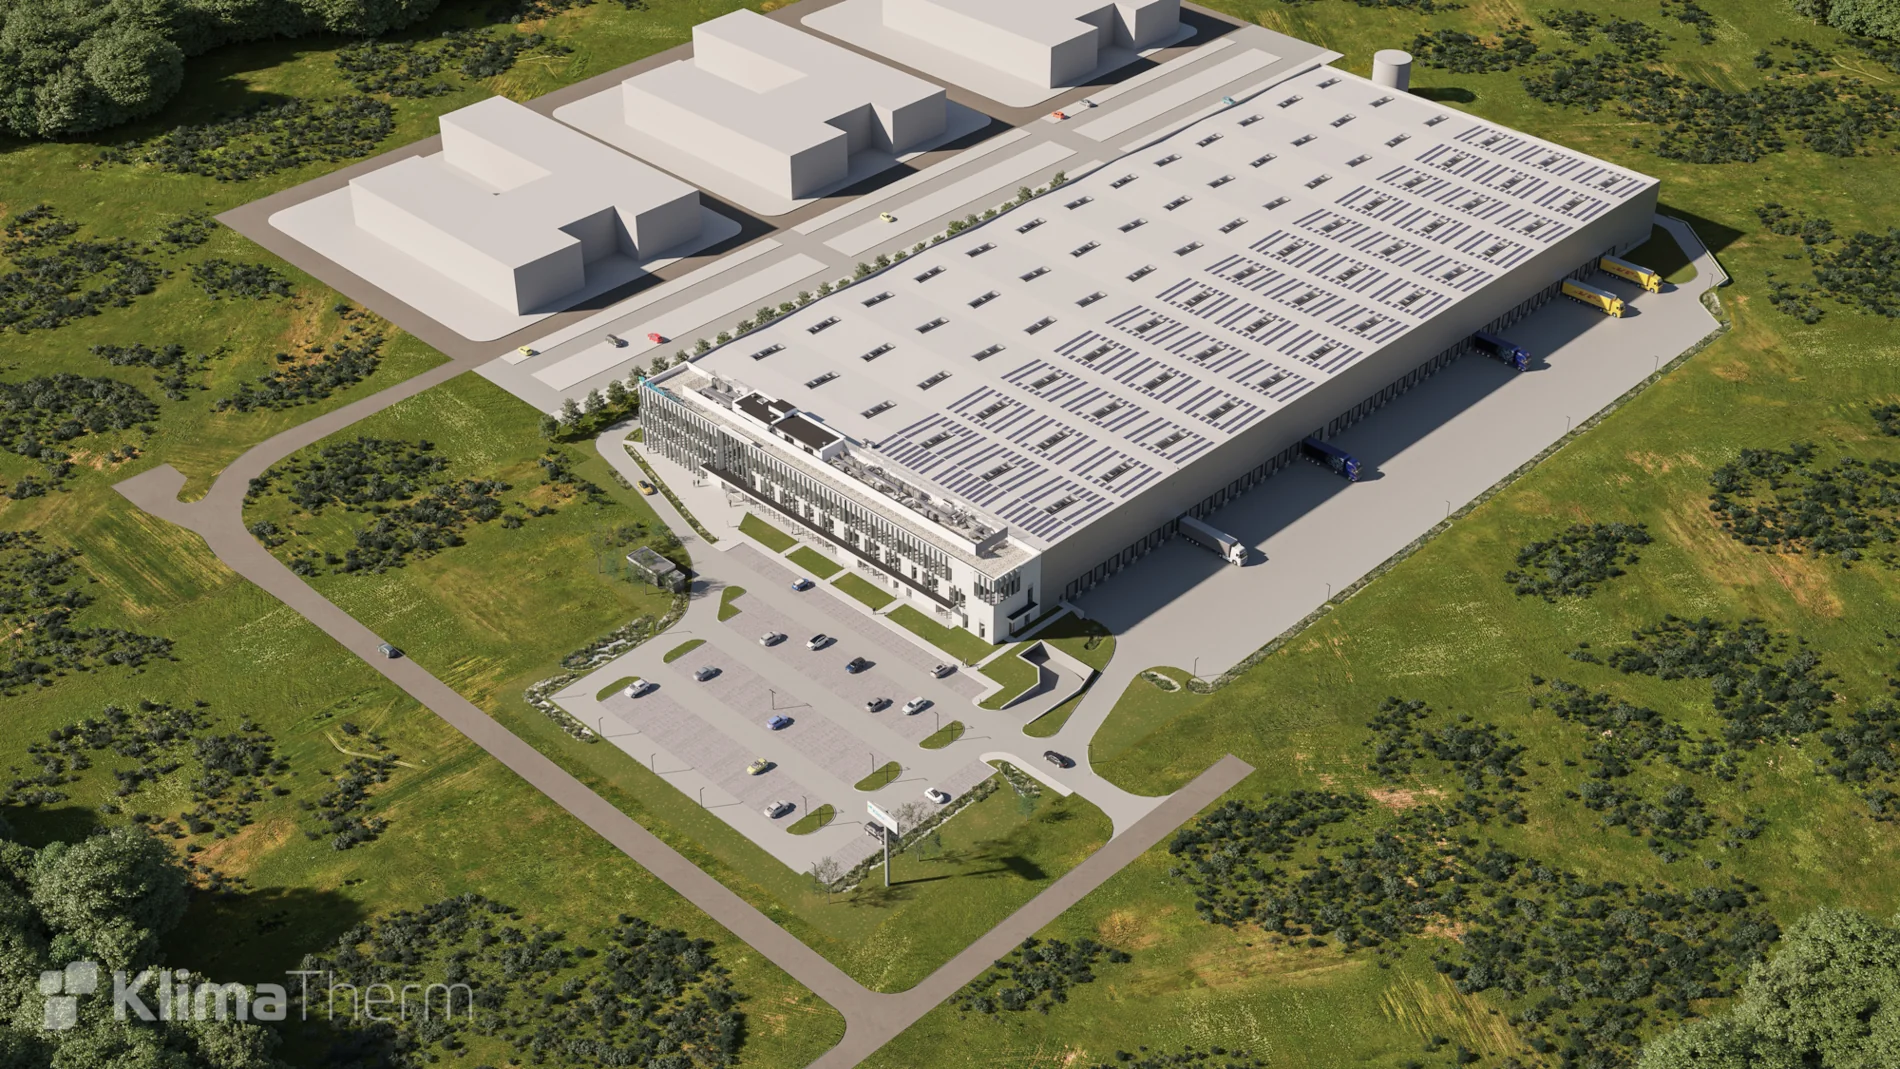 Firma Klima-Therm ruszyła z budową zeroenergetycznego budynku AZYMUTALNA w Gdańsku